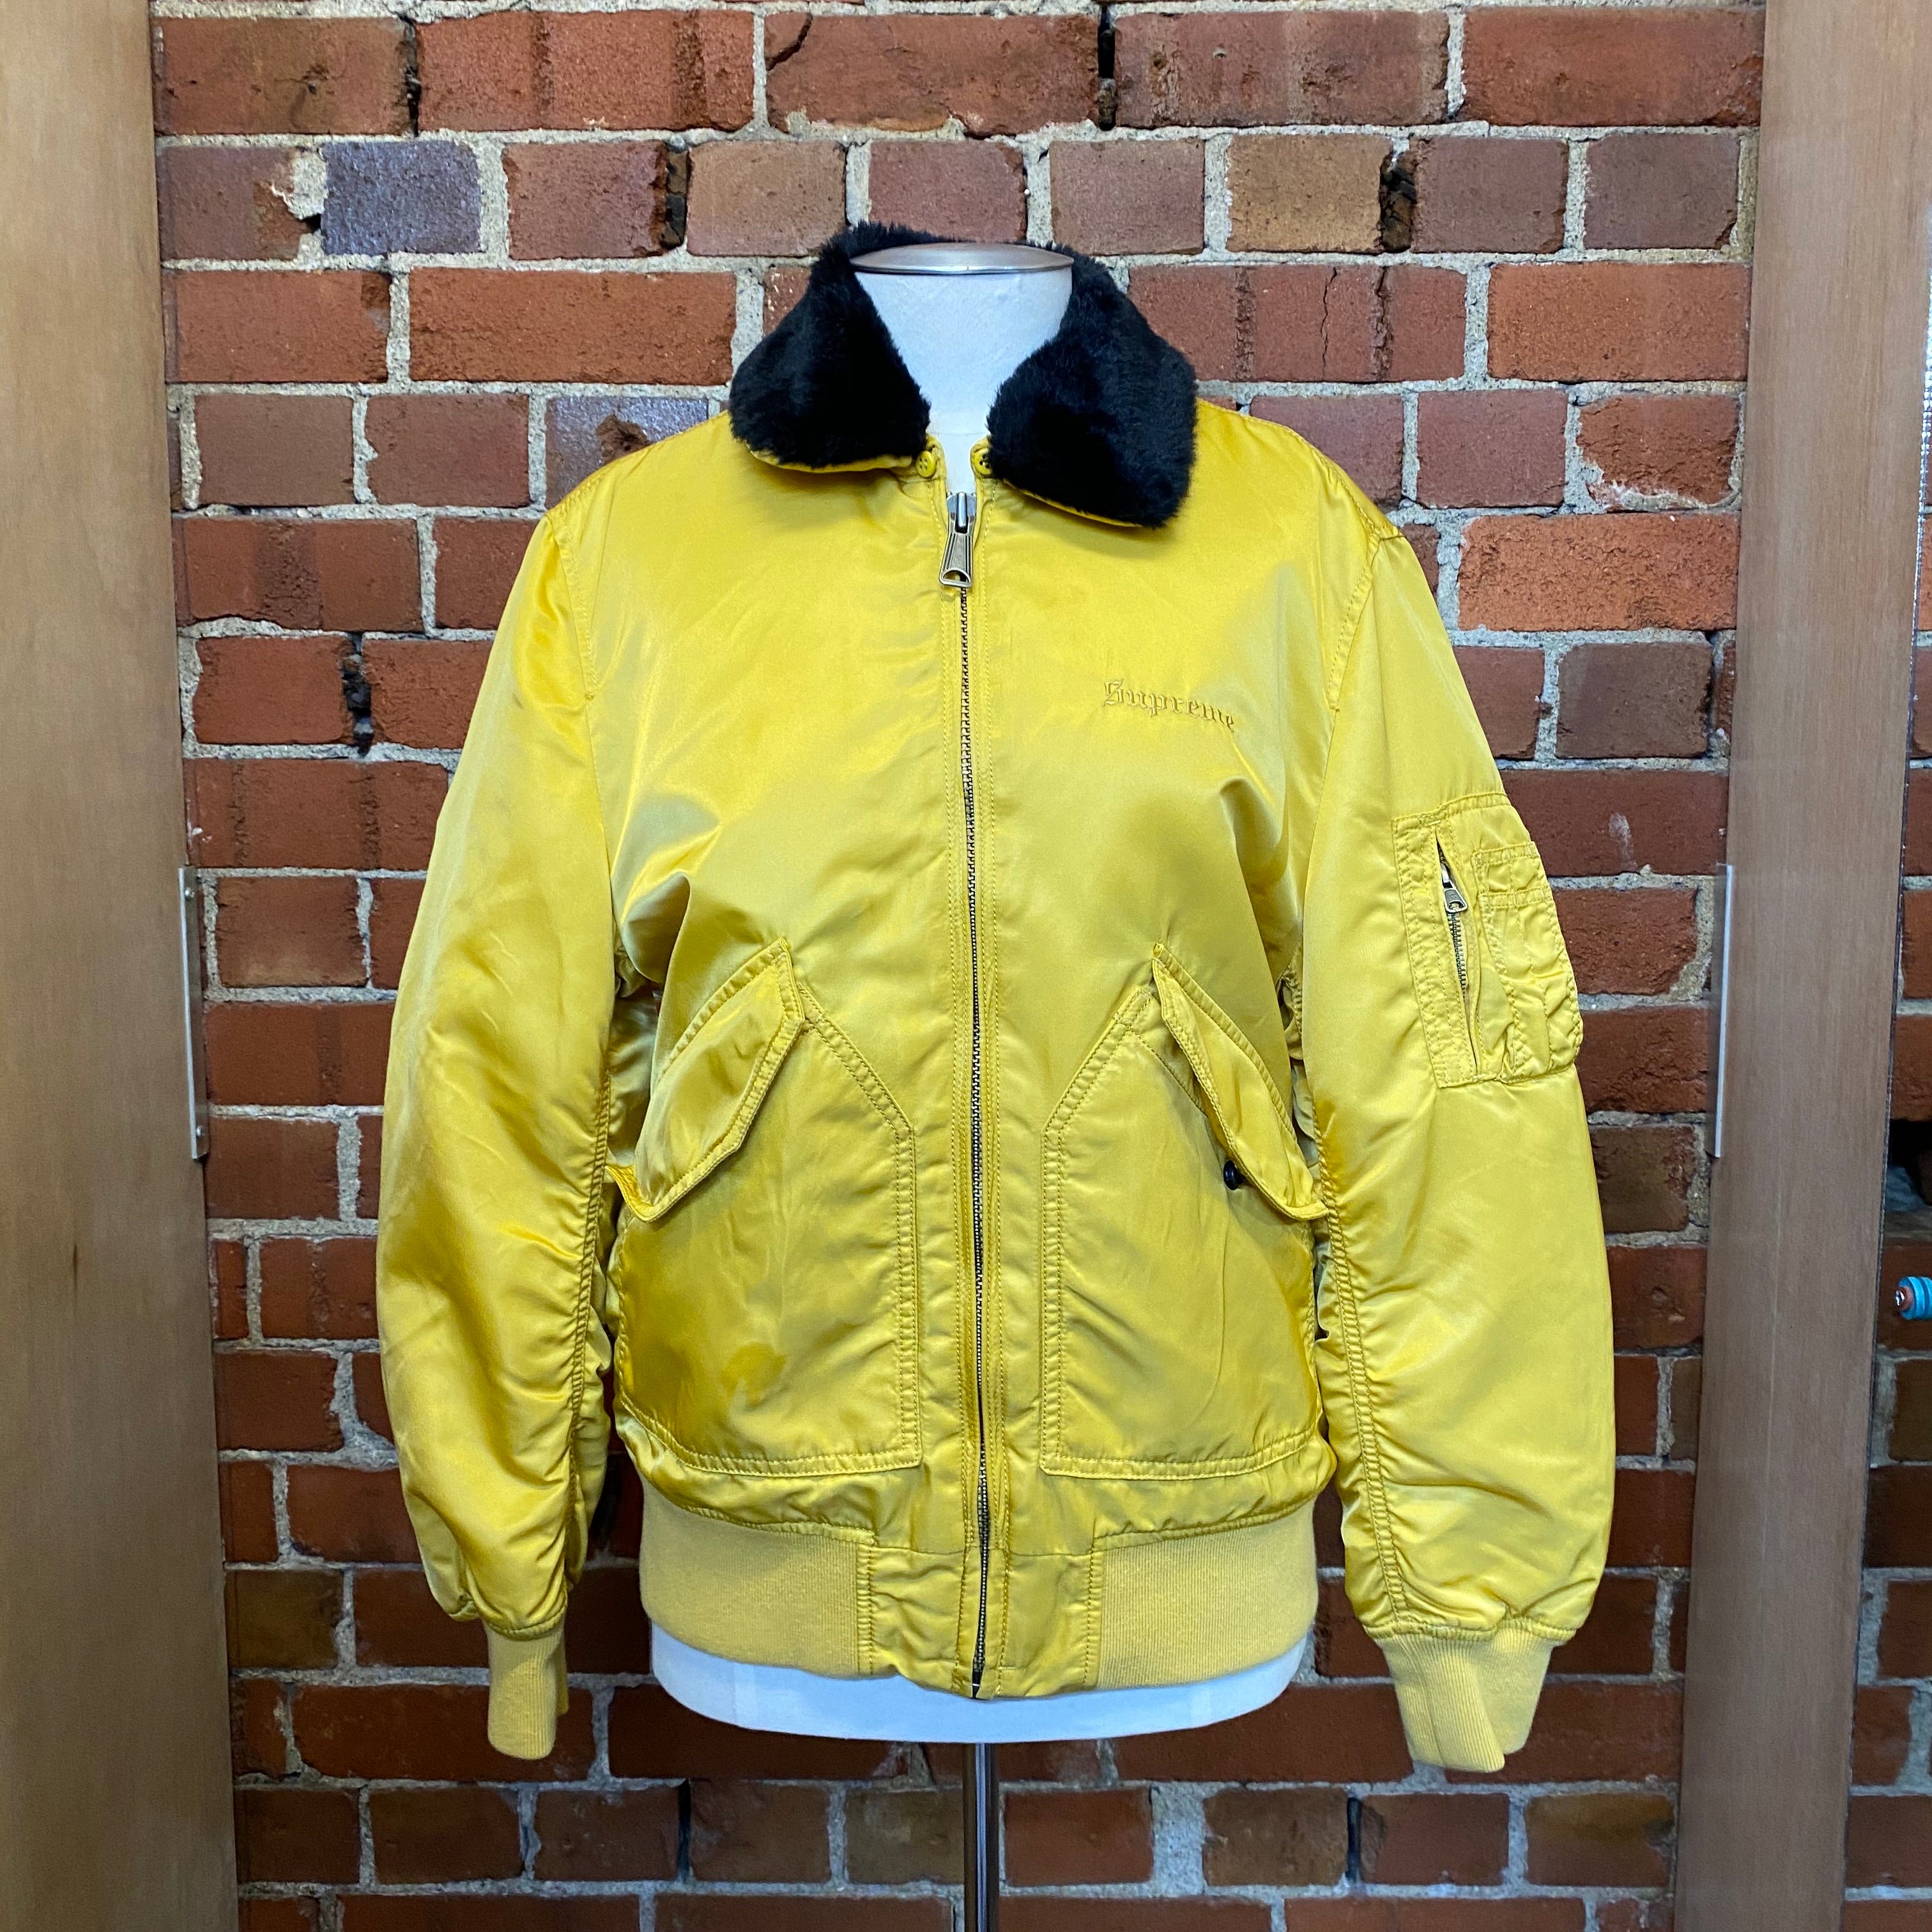 SUPREME yellow bomber jacket